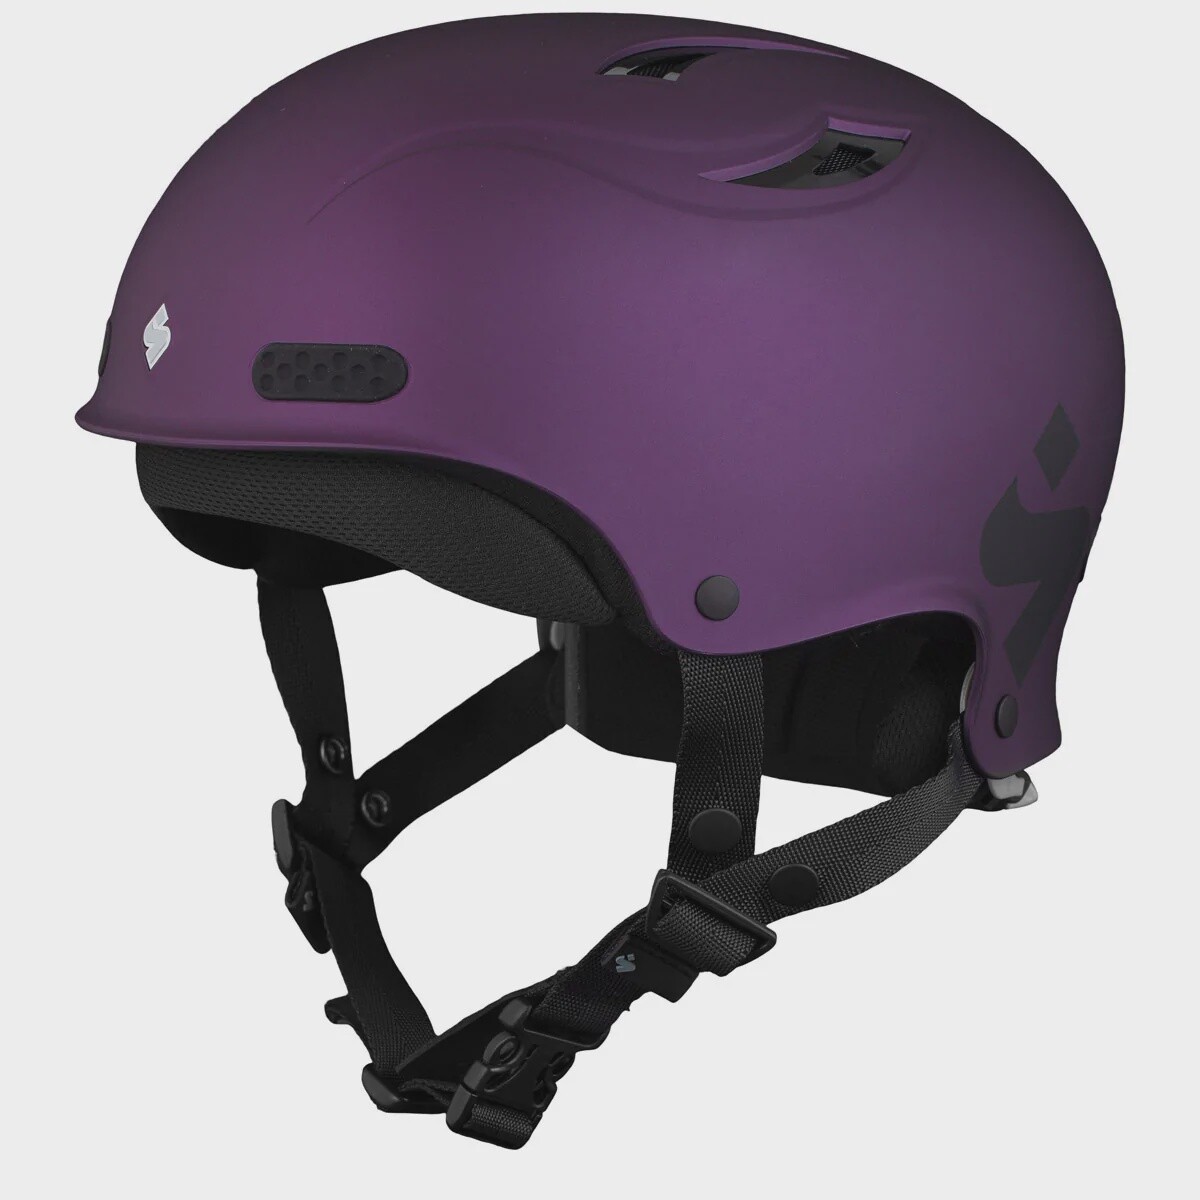 Wanderer II Helmet, Color: Deep Purple Metallic, Size: SM